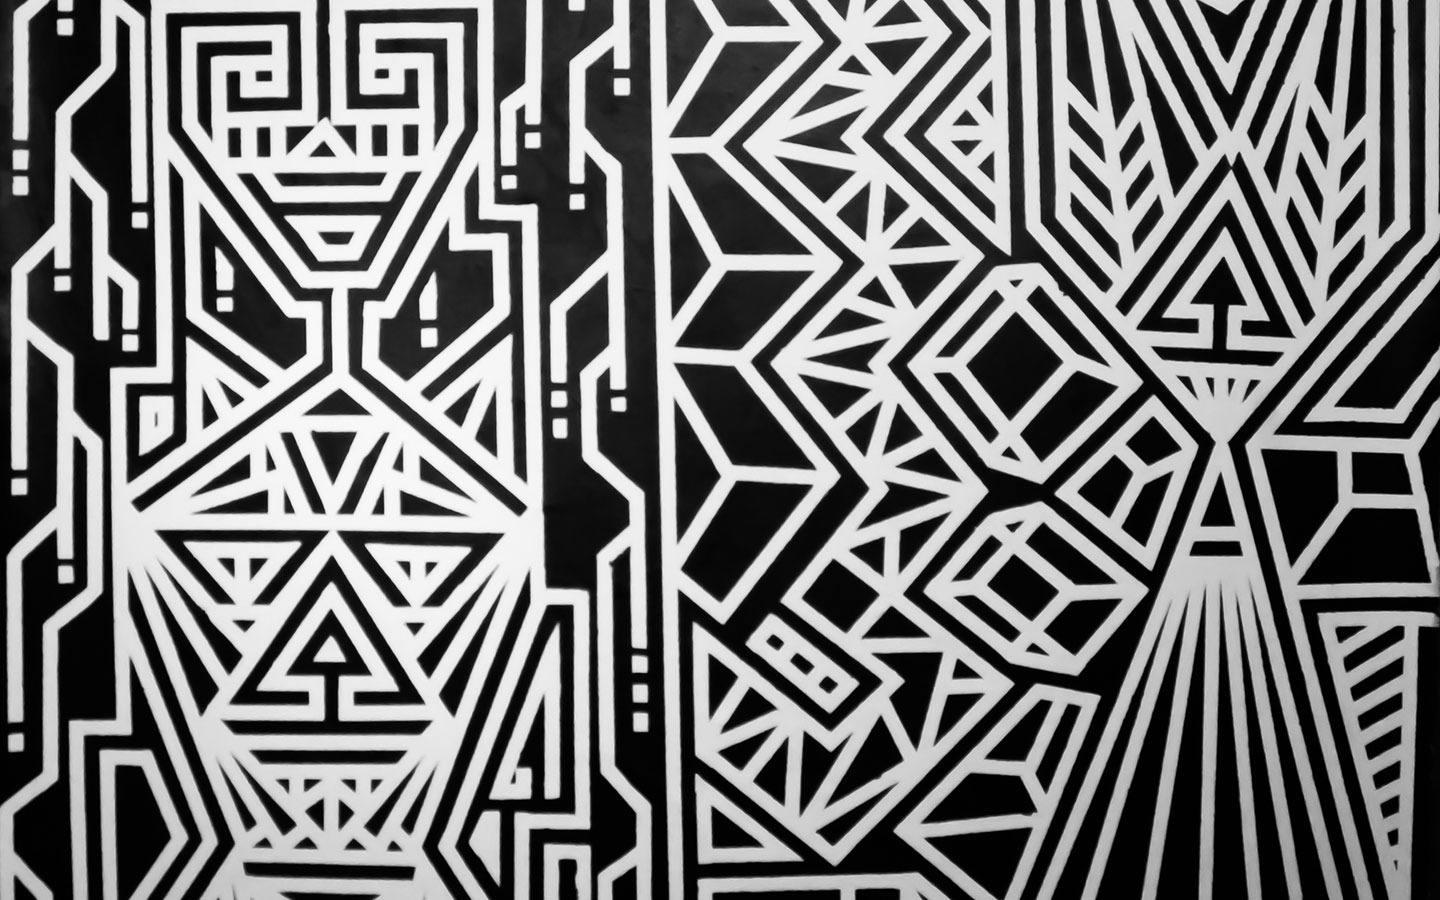 Mural en blanco y negro del artista miamense Marcus Blake